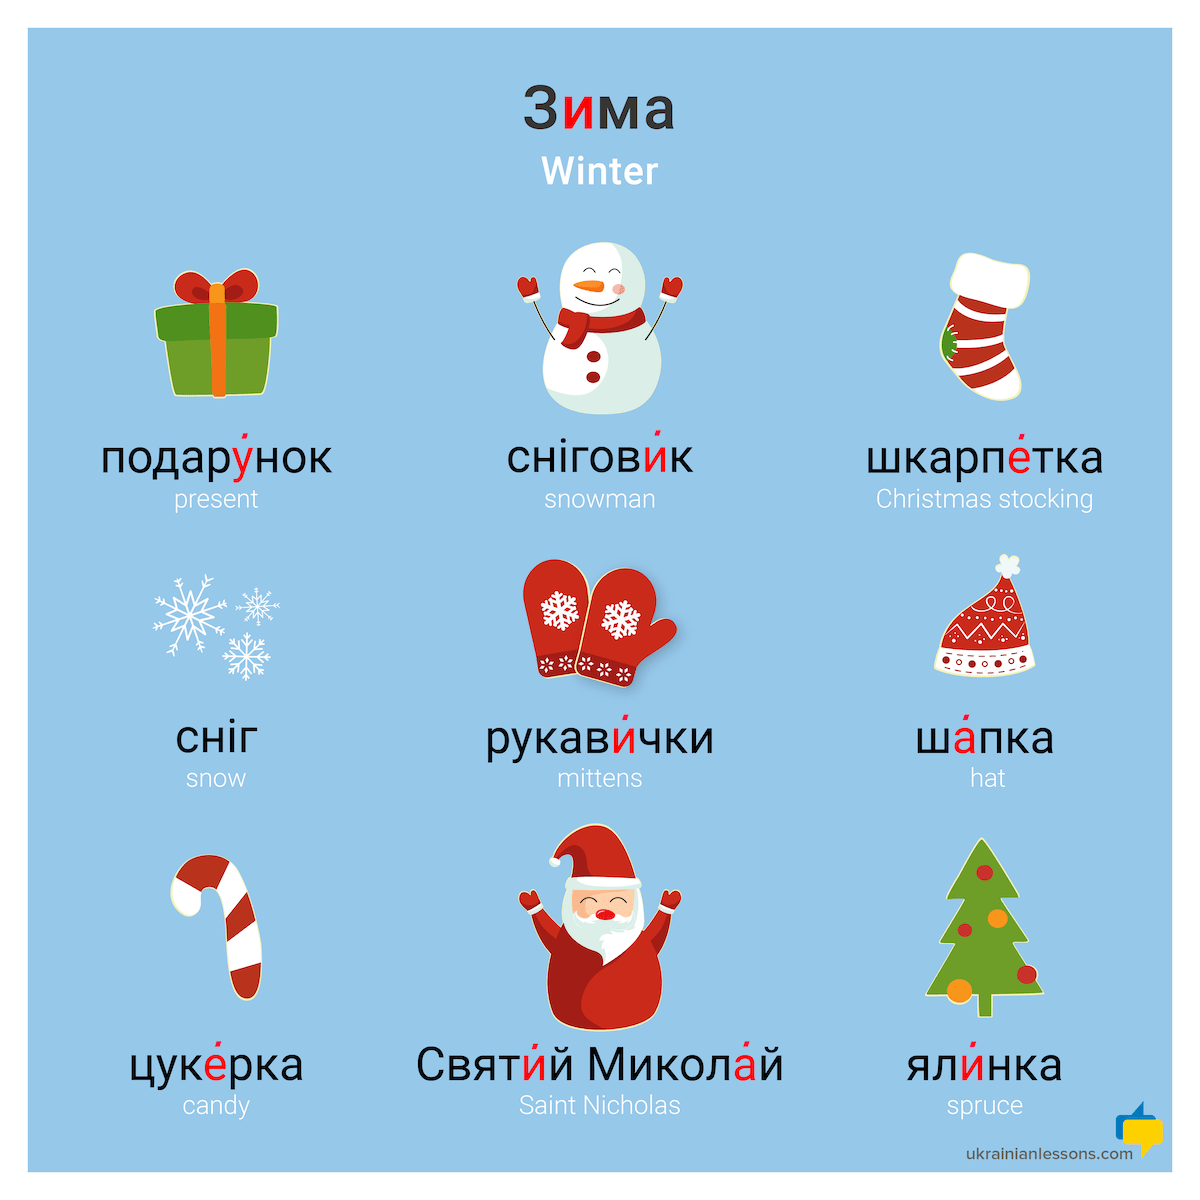 Зима – winter vocabulary in Ukrainian